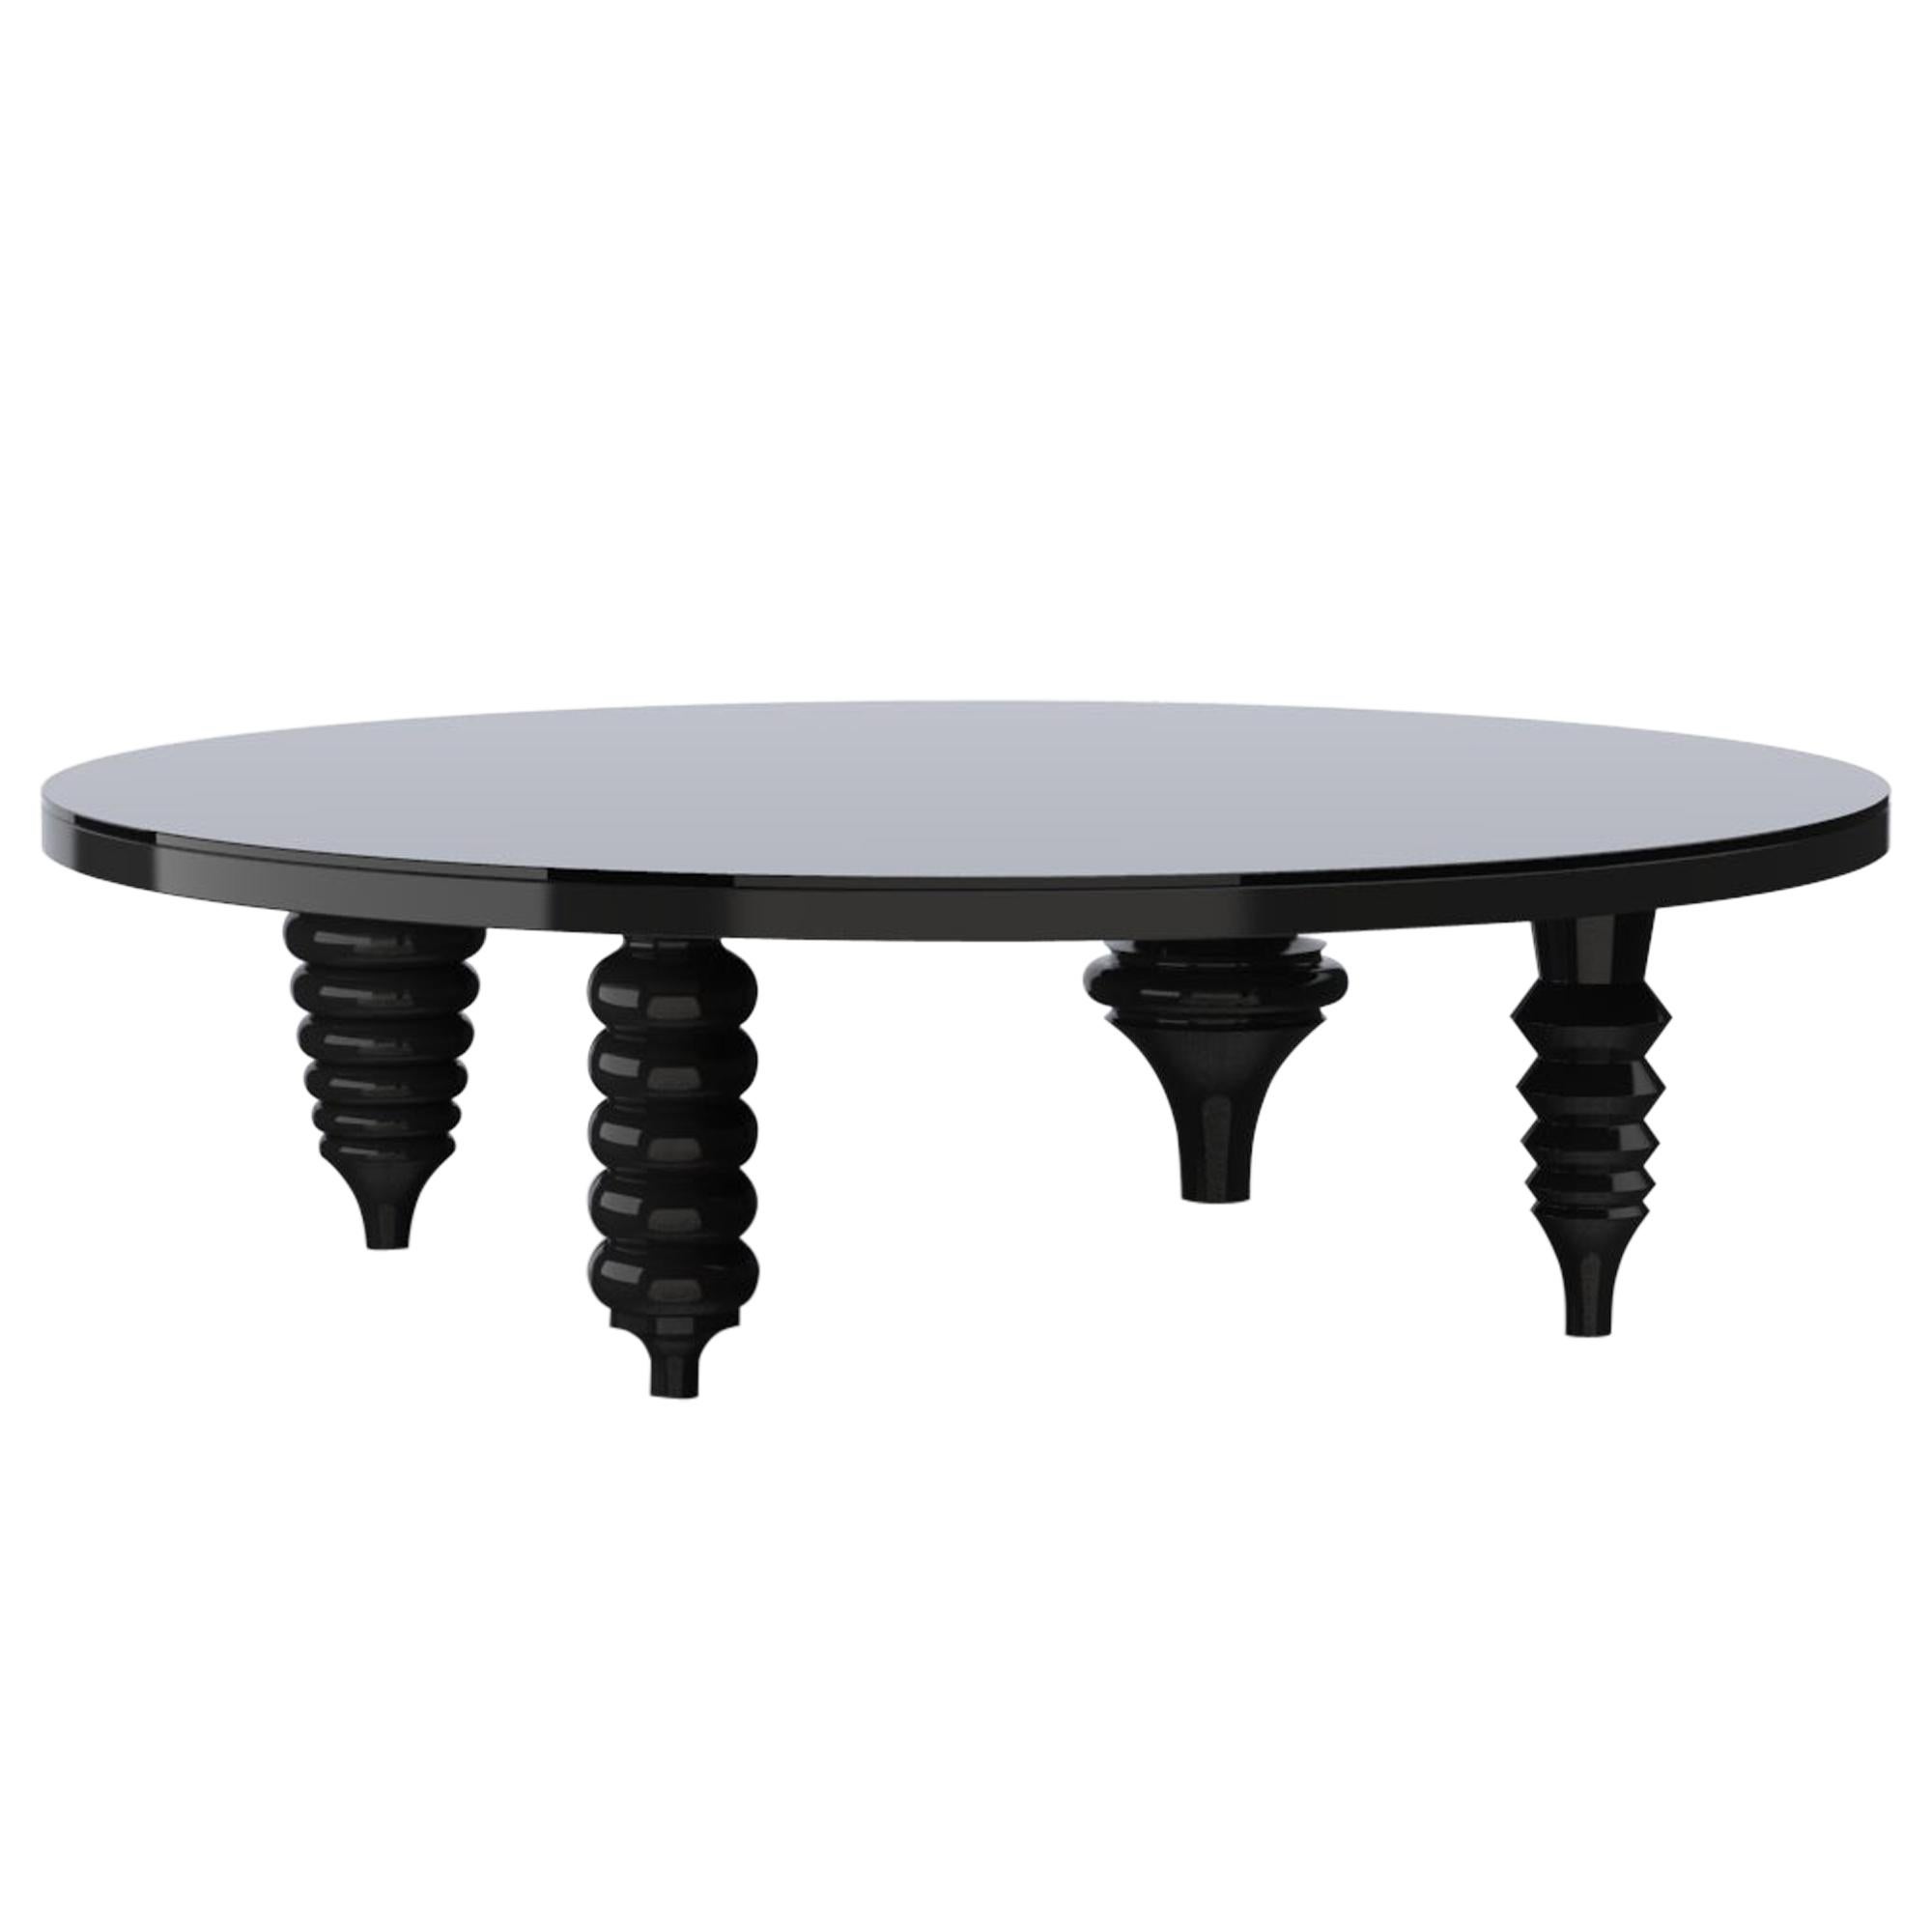 Table basse contemporaine multi-pieds finition laquée noire brillante, plateau en verre en vente